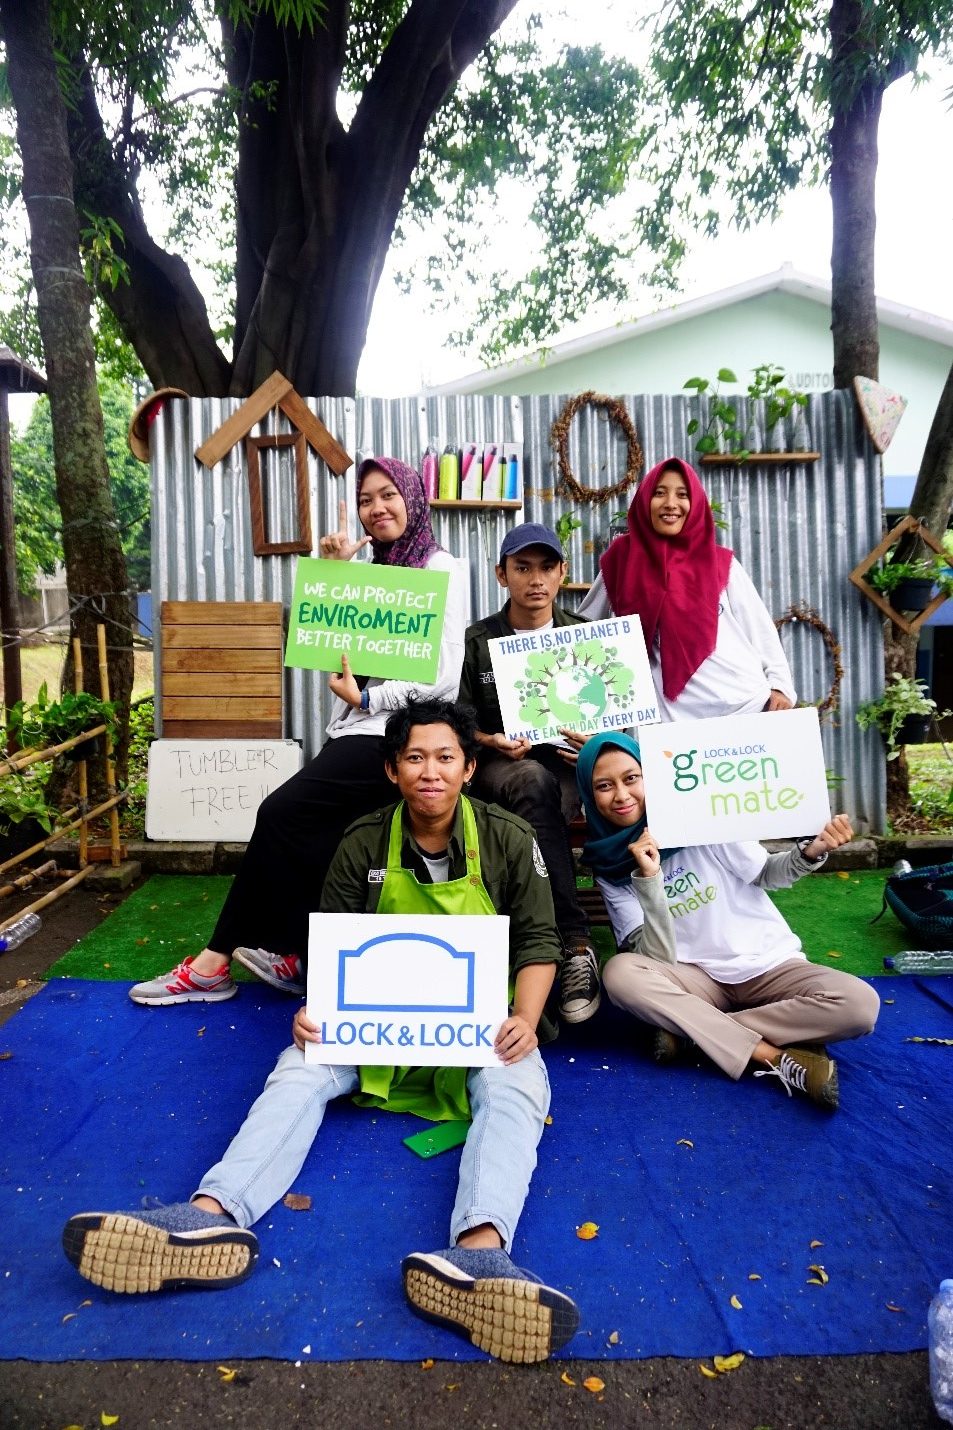 Kampanye Peduli Lingkungan ”Campus Tumbler Day” bersama Greenmate 2018 dan LOCK&LOCK Indonesia.